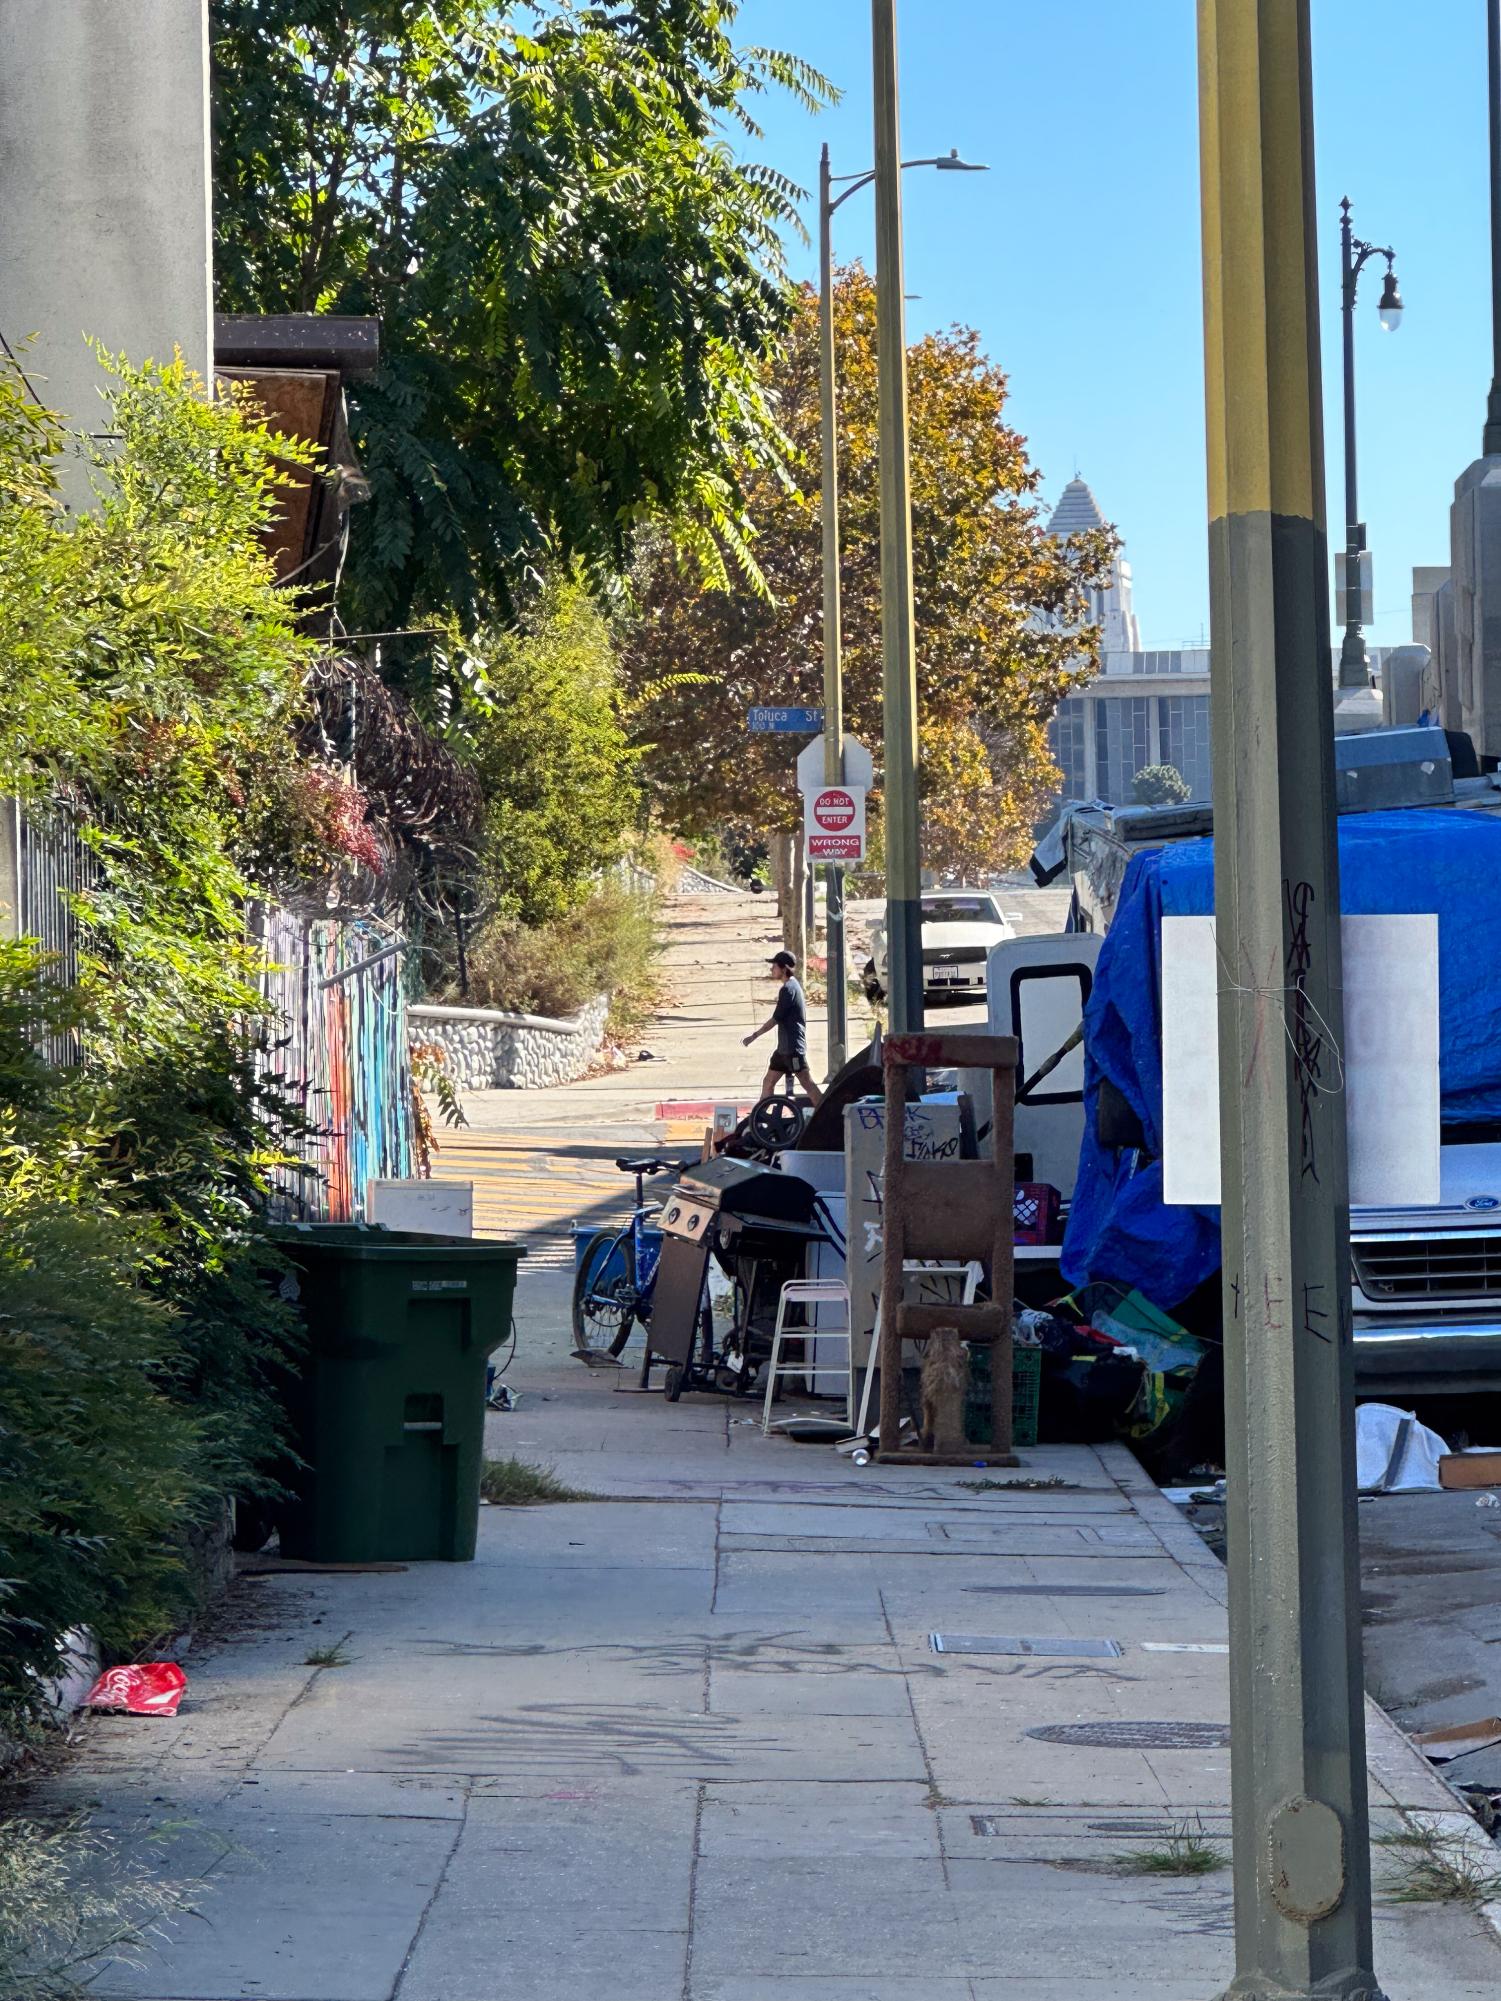 洛杉矶无家可归者报告称，童年创伤、精神疾病、成瘾和房价是导致无家可归危机的原因